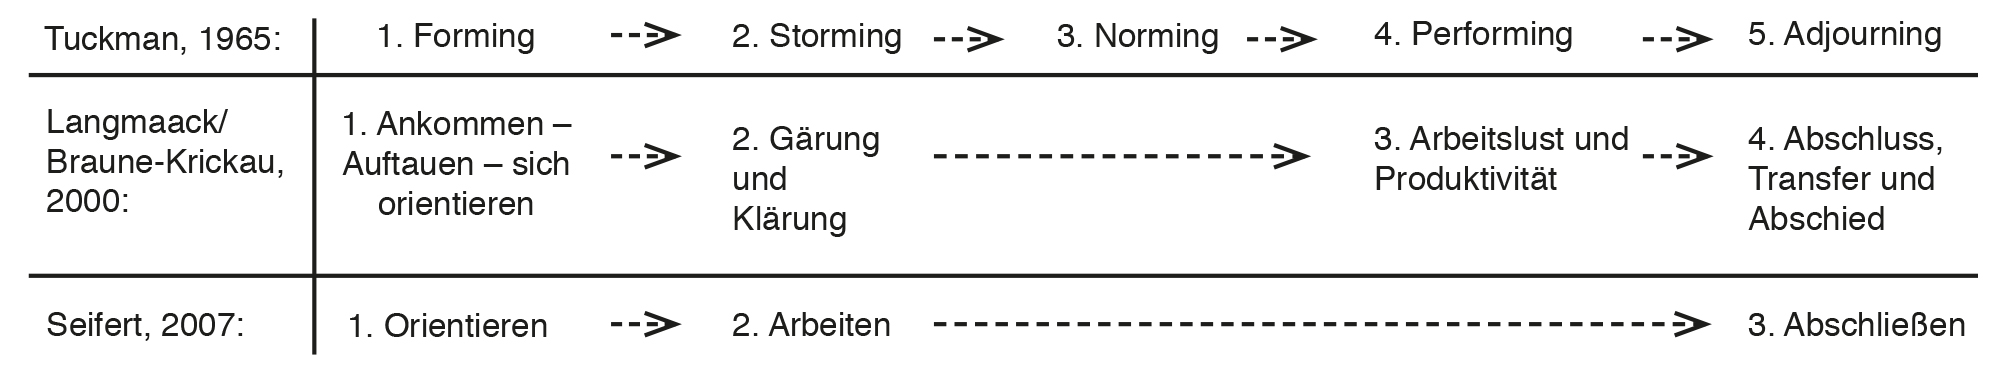 Vier-Phasen-Modell nach Tuckman